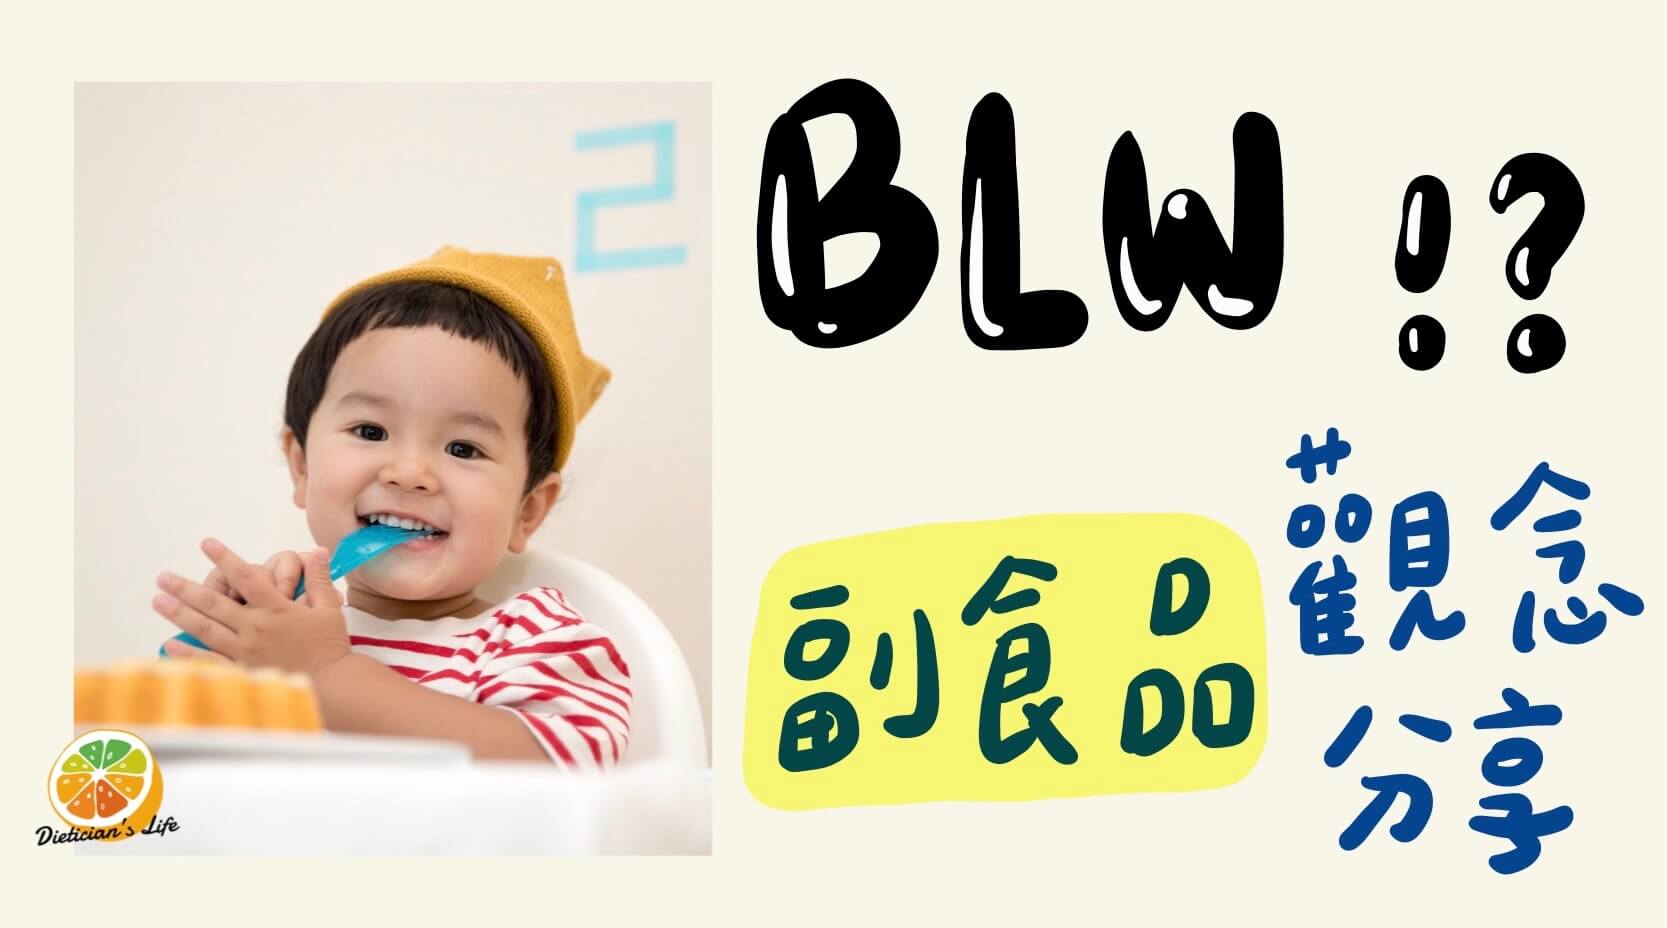 【嬰幼兒營養】時下正夯的BLW是什麼？給寶寶吃手指食物就是BLW嗎？母嬰系列課程心得分享